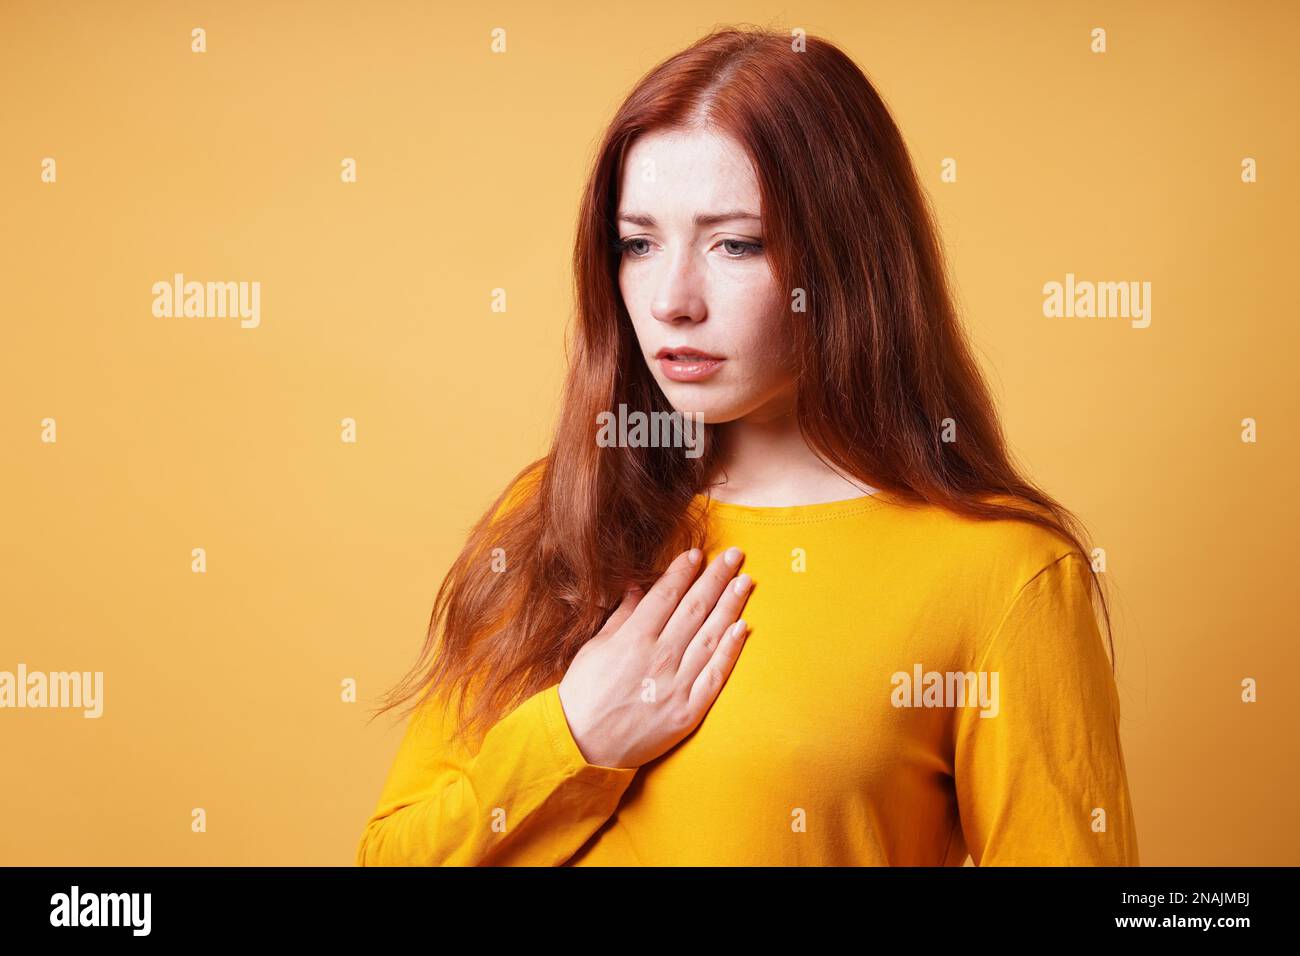 Traurige junge Frau mit Hand auf der Brust, die sich an Sodbrennen oder Sodbrennen krank fühlt Stockfoto